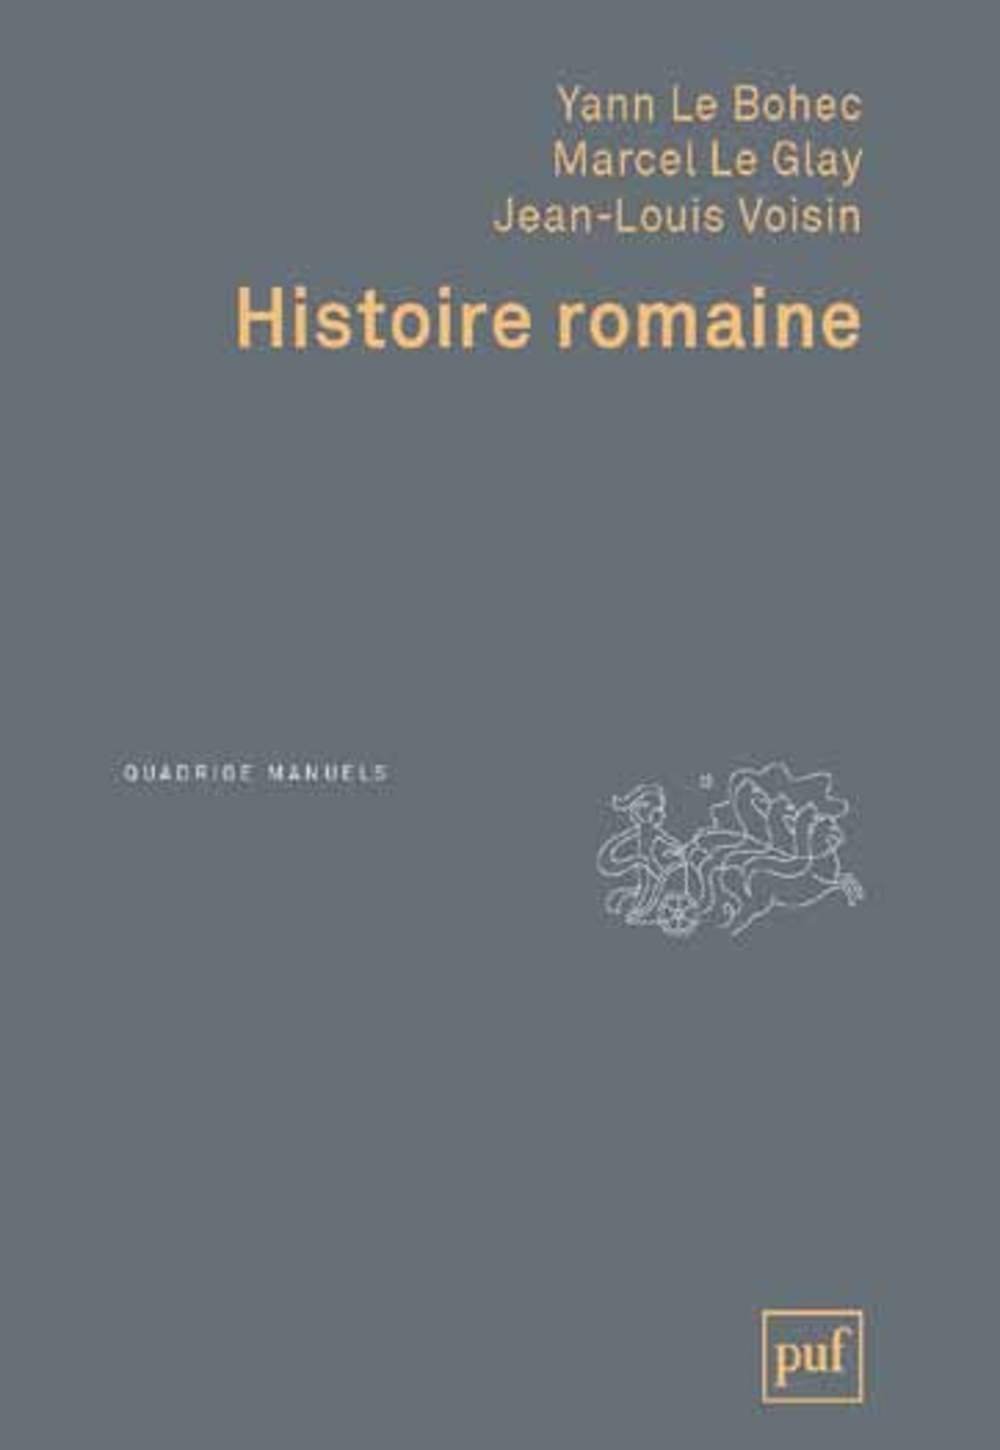 Histoire romaine, 2019, 643 p.